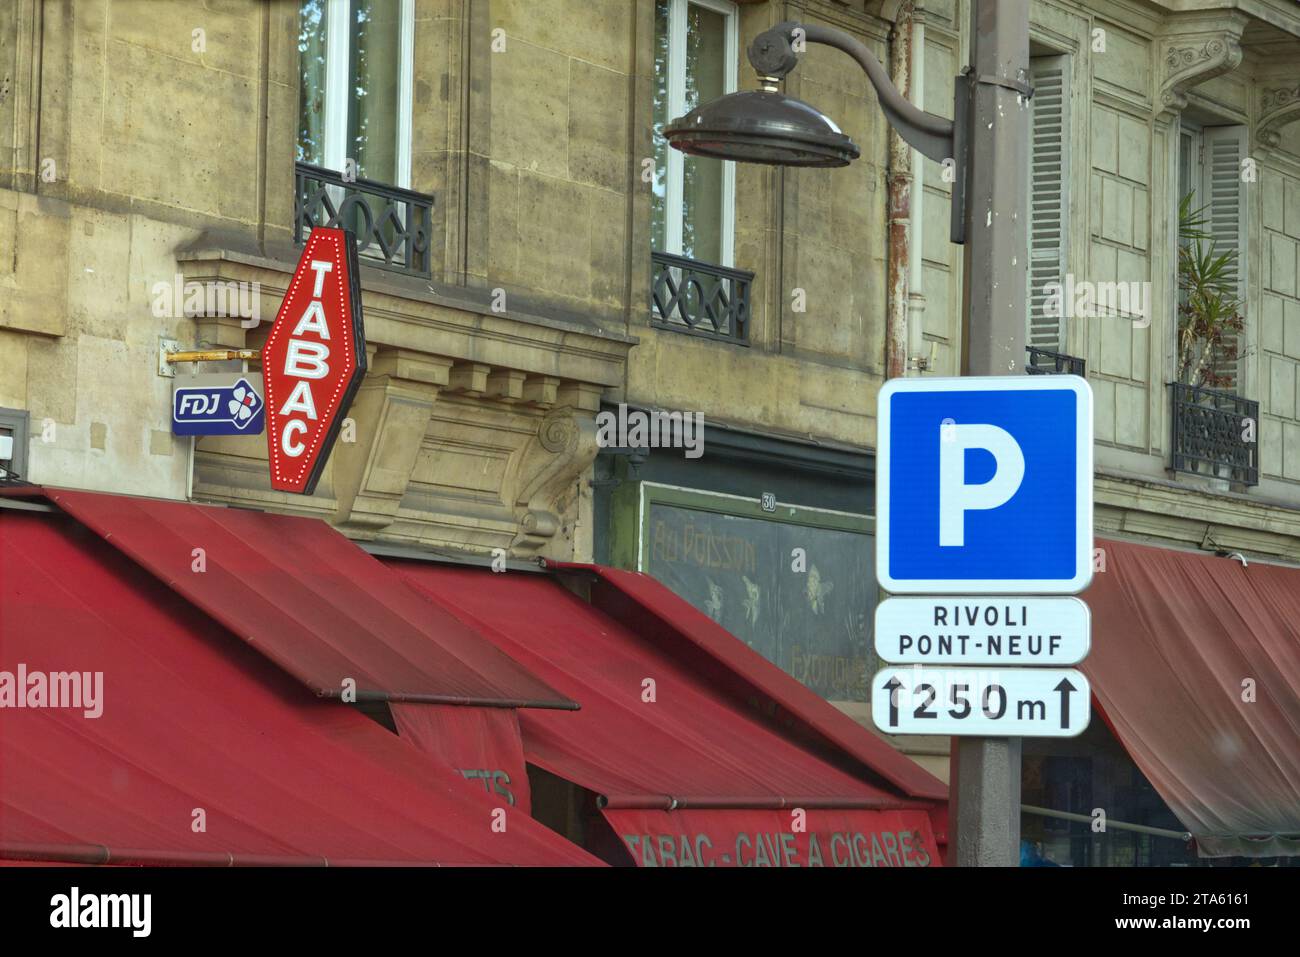 Parigi, Francia - cartello Tabac sopra le tende di un caffè tabac, un bar che vende anche sigarette, biglietti della lotteria e talvolta francobolli Foto Stock